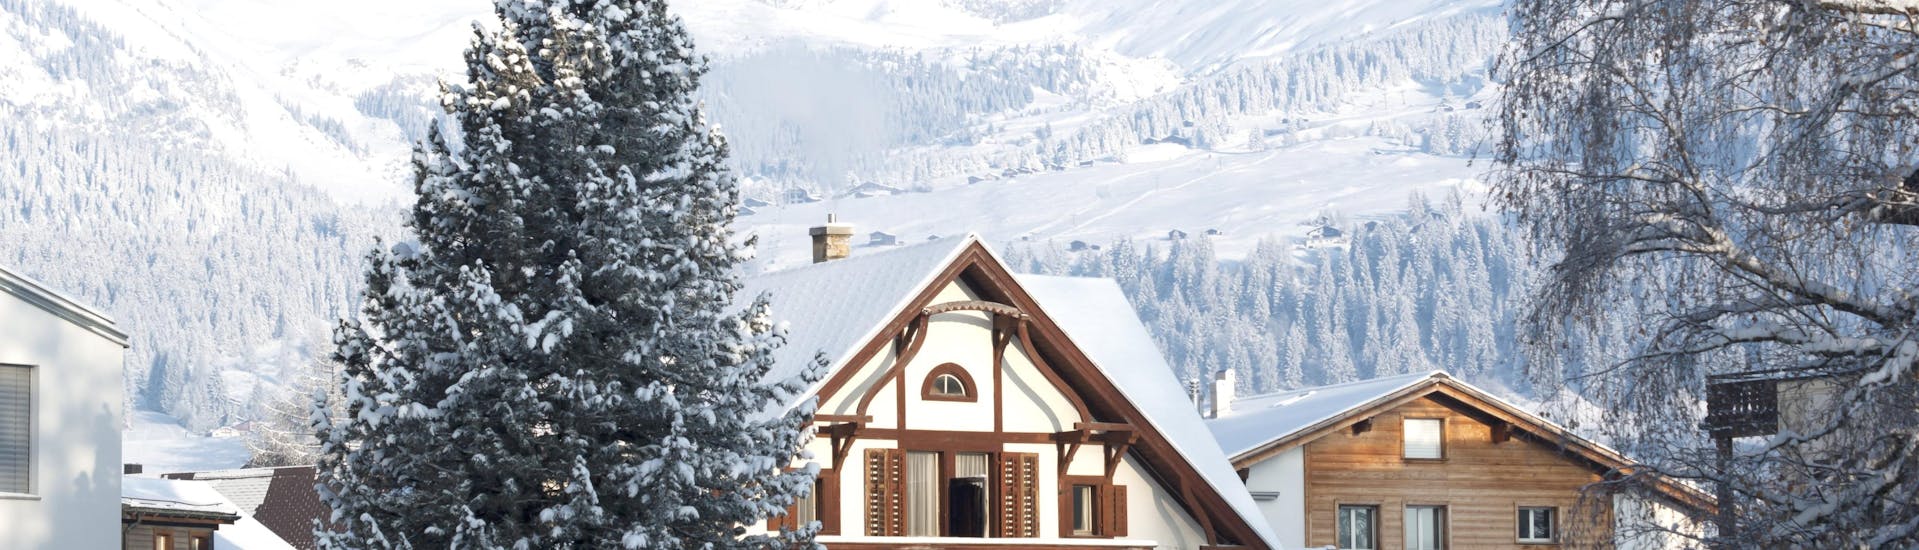 Une vue sur les chalets couverts de neige dans la station de ski suisse de Laax-Flims-Falera, où les visiteurs peuvent réserver des cours de ski avec l'une des écoles de ski locales.